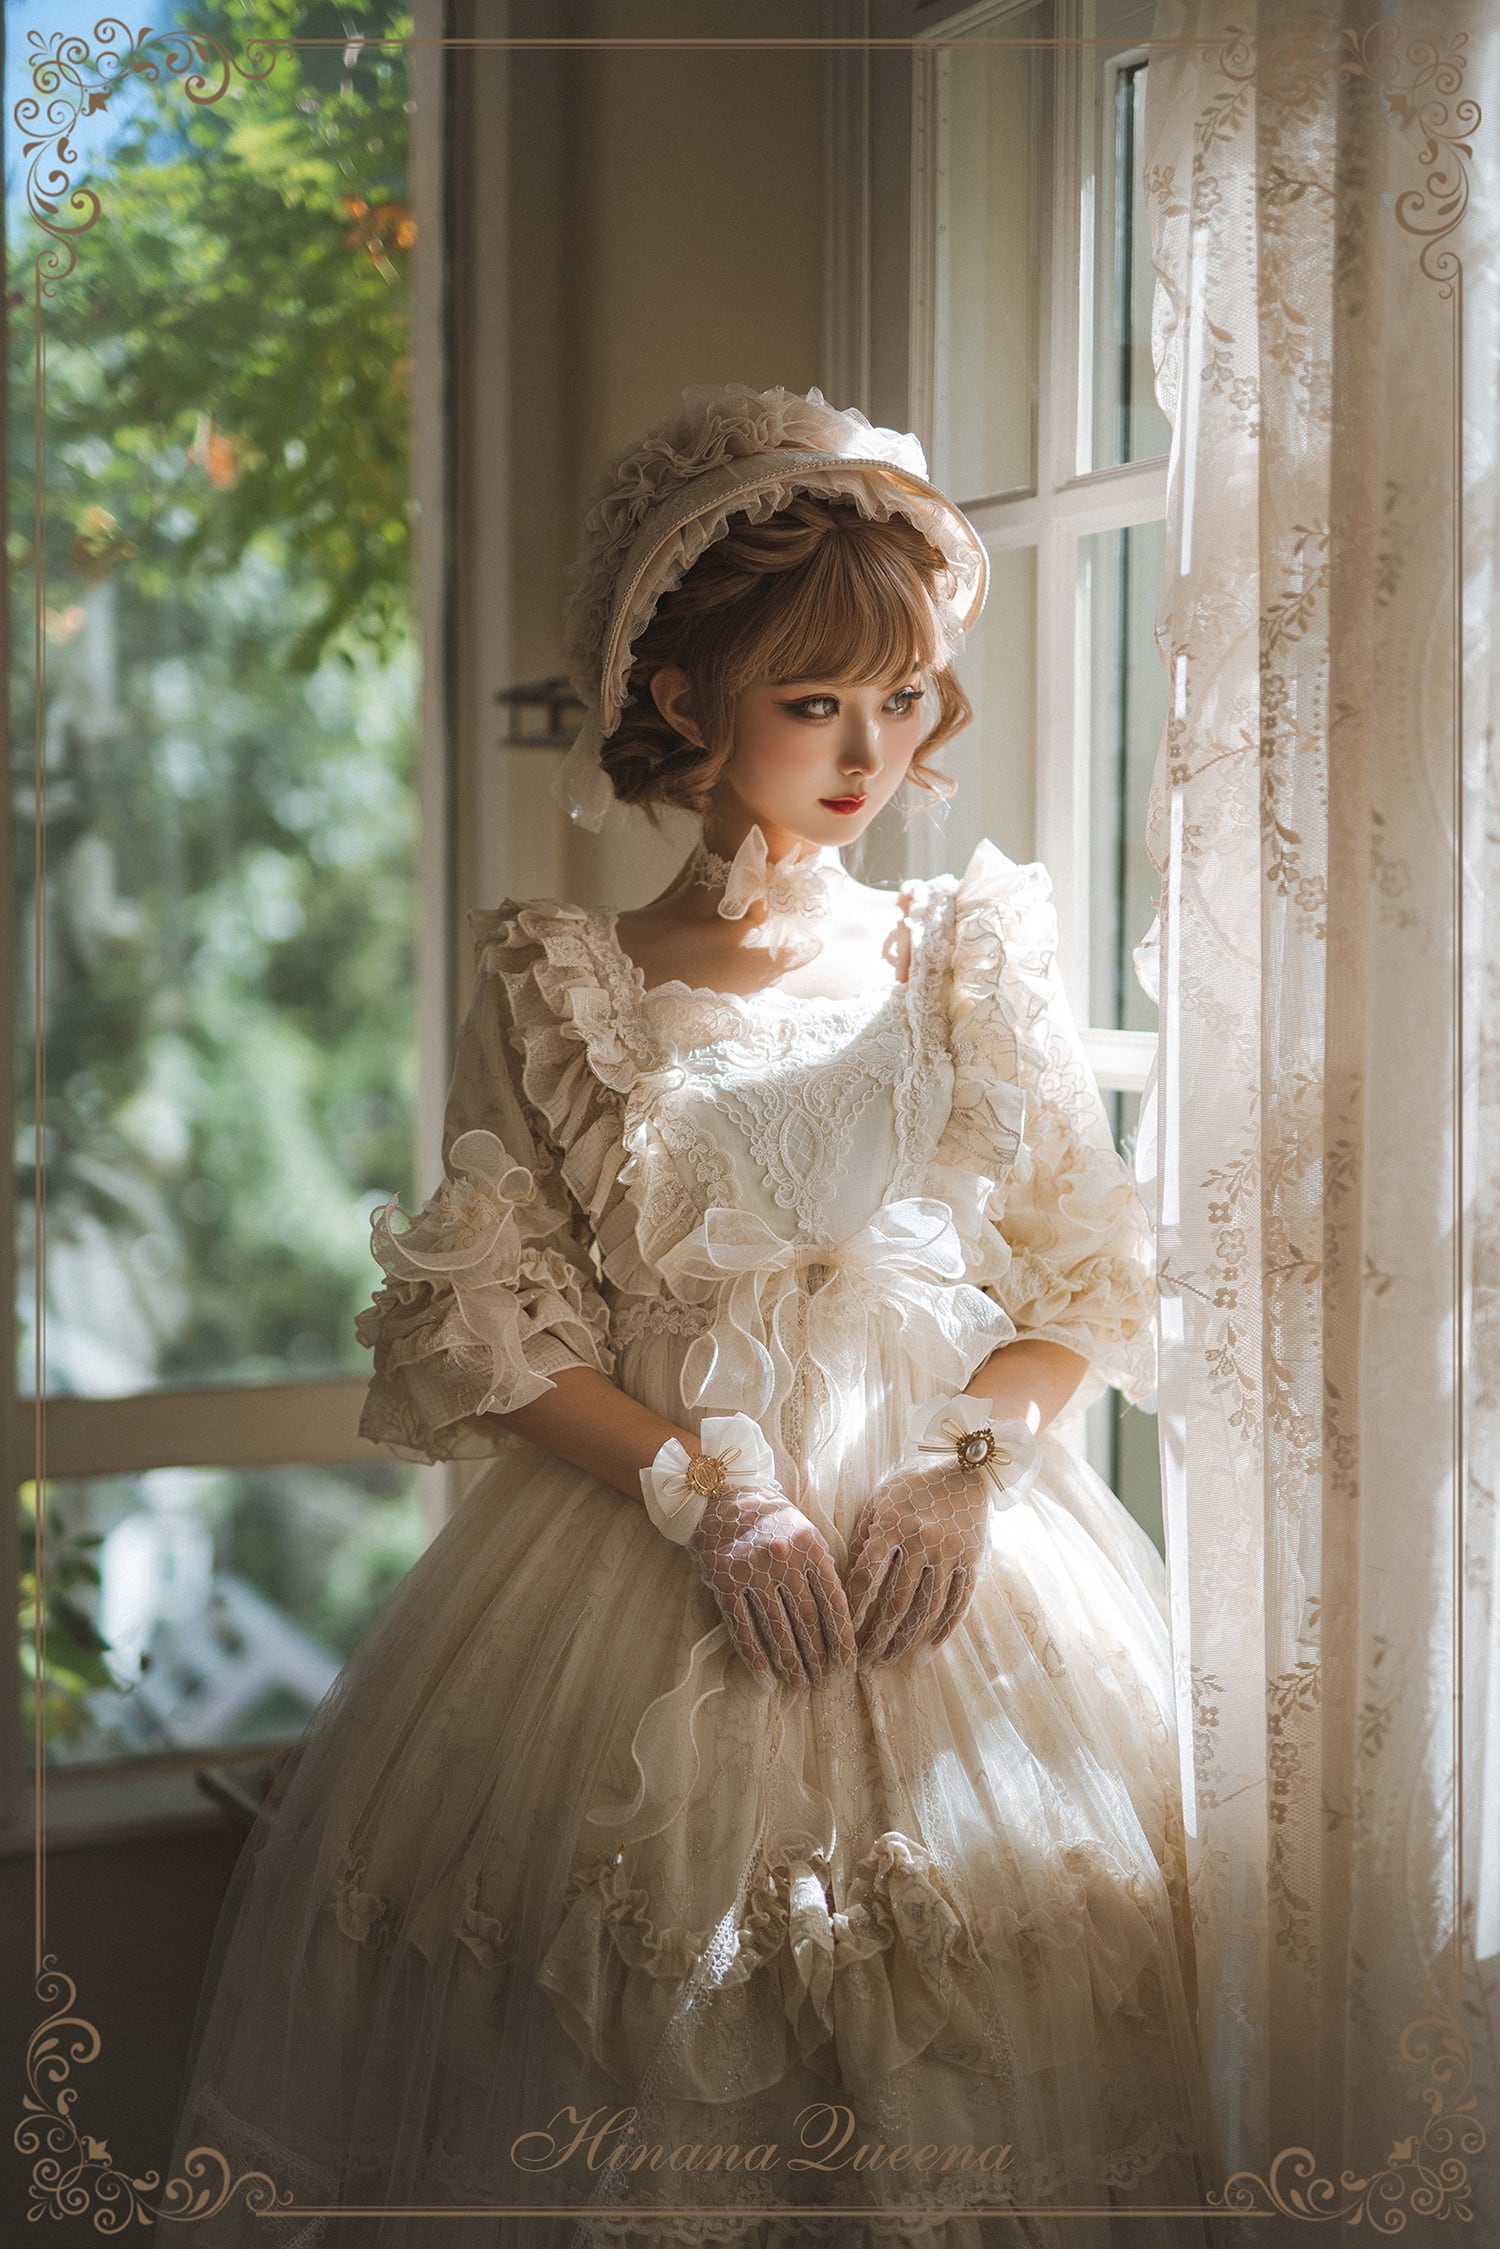 Henriettaロリータファッション クラシックロリータ ロココ調 ドレス